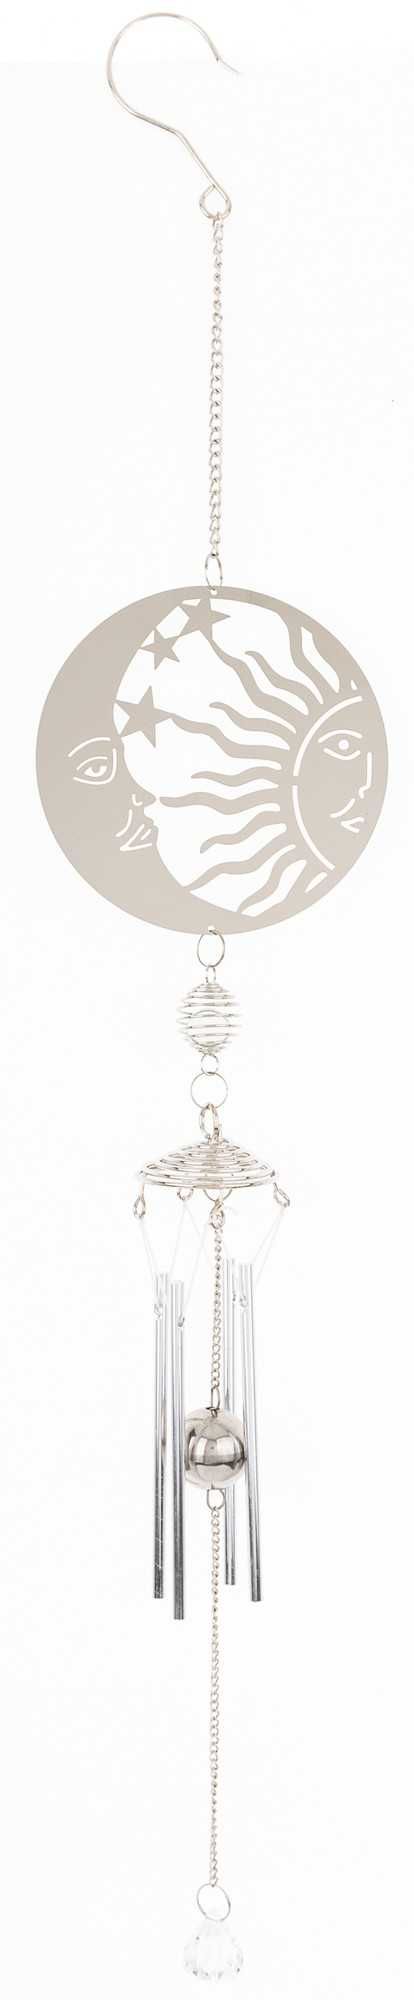 Dekoracja wisząca srebrna metalowa ozdobna Słońce Księżyc 75cm dzwonek